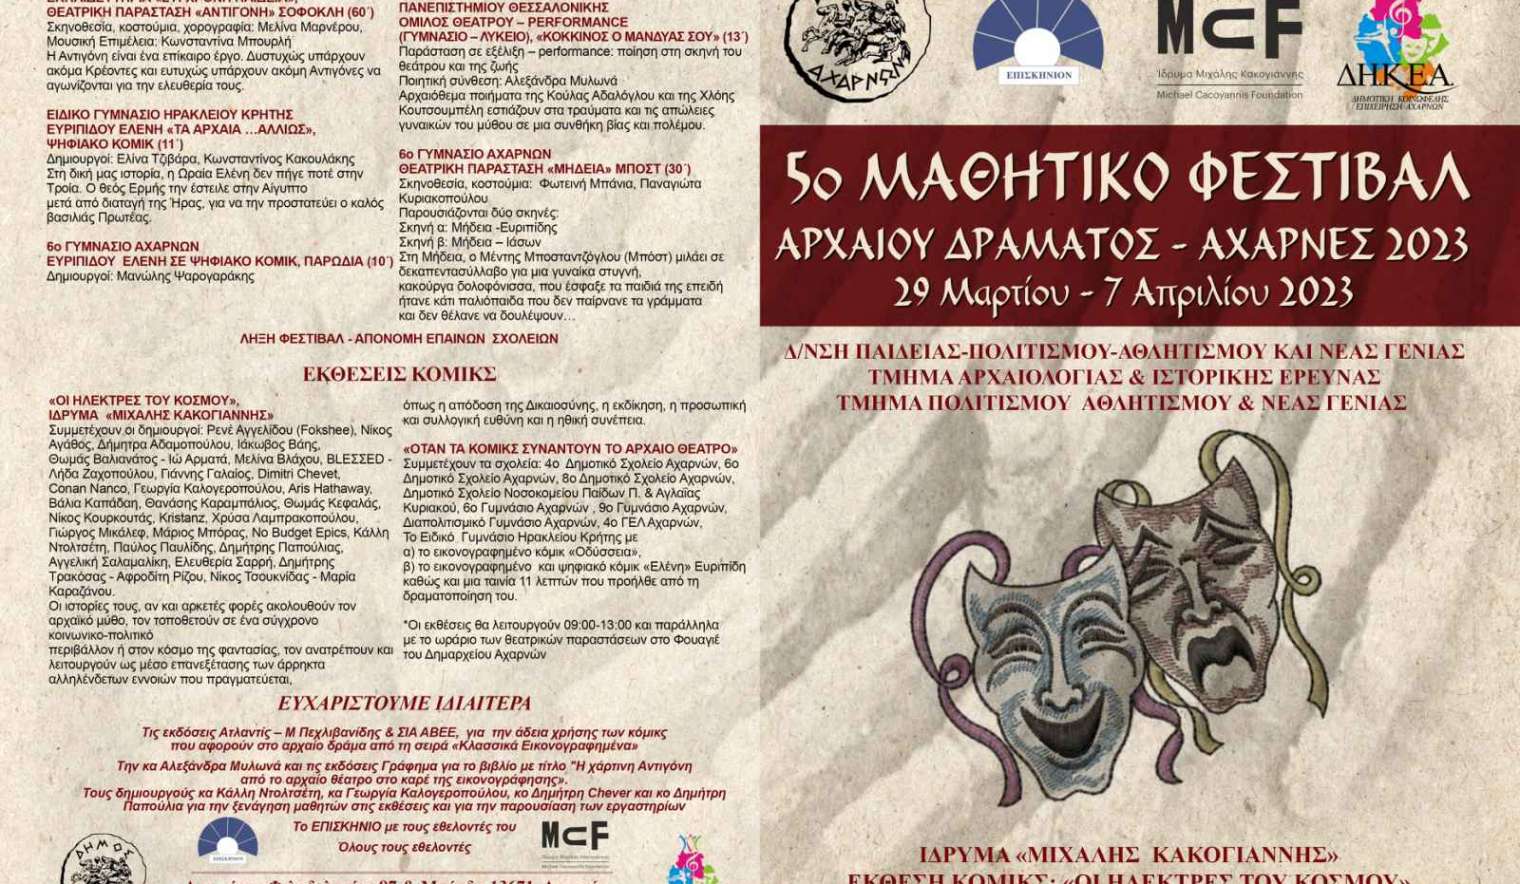 5ο Μαθητικό Φεστιβάλ Αρχαίου Δράματος από τον Δήμο Αχαρνών